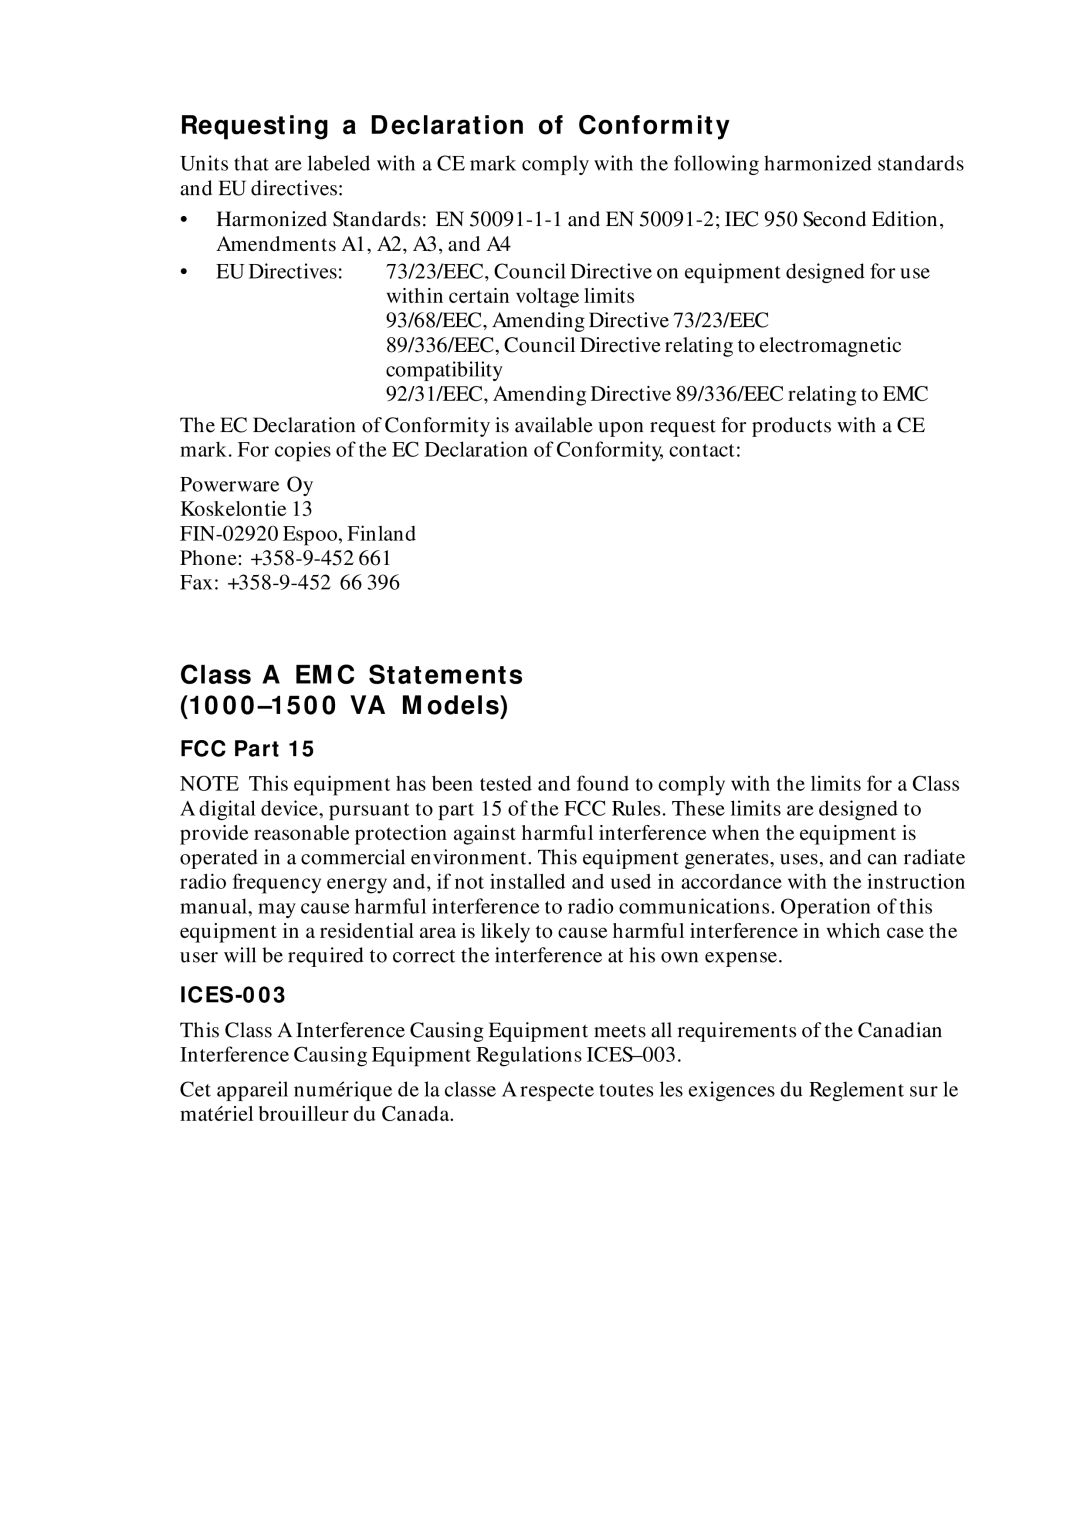 Powerware UPS 1000 - 2200 user manual Requesting a Declaration of Conformity, Class a EMC Statements VA Models 